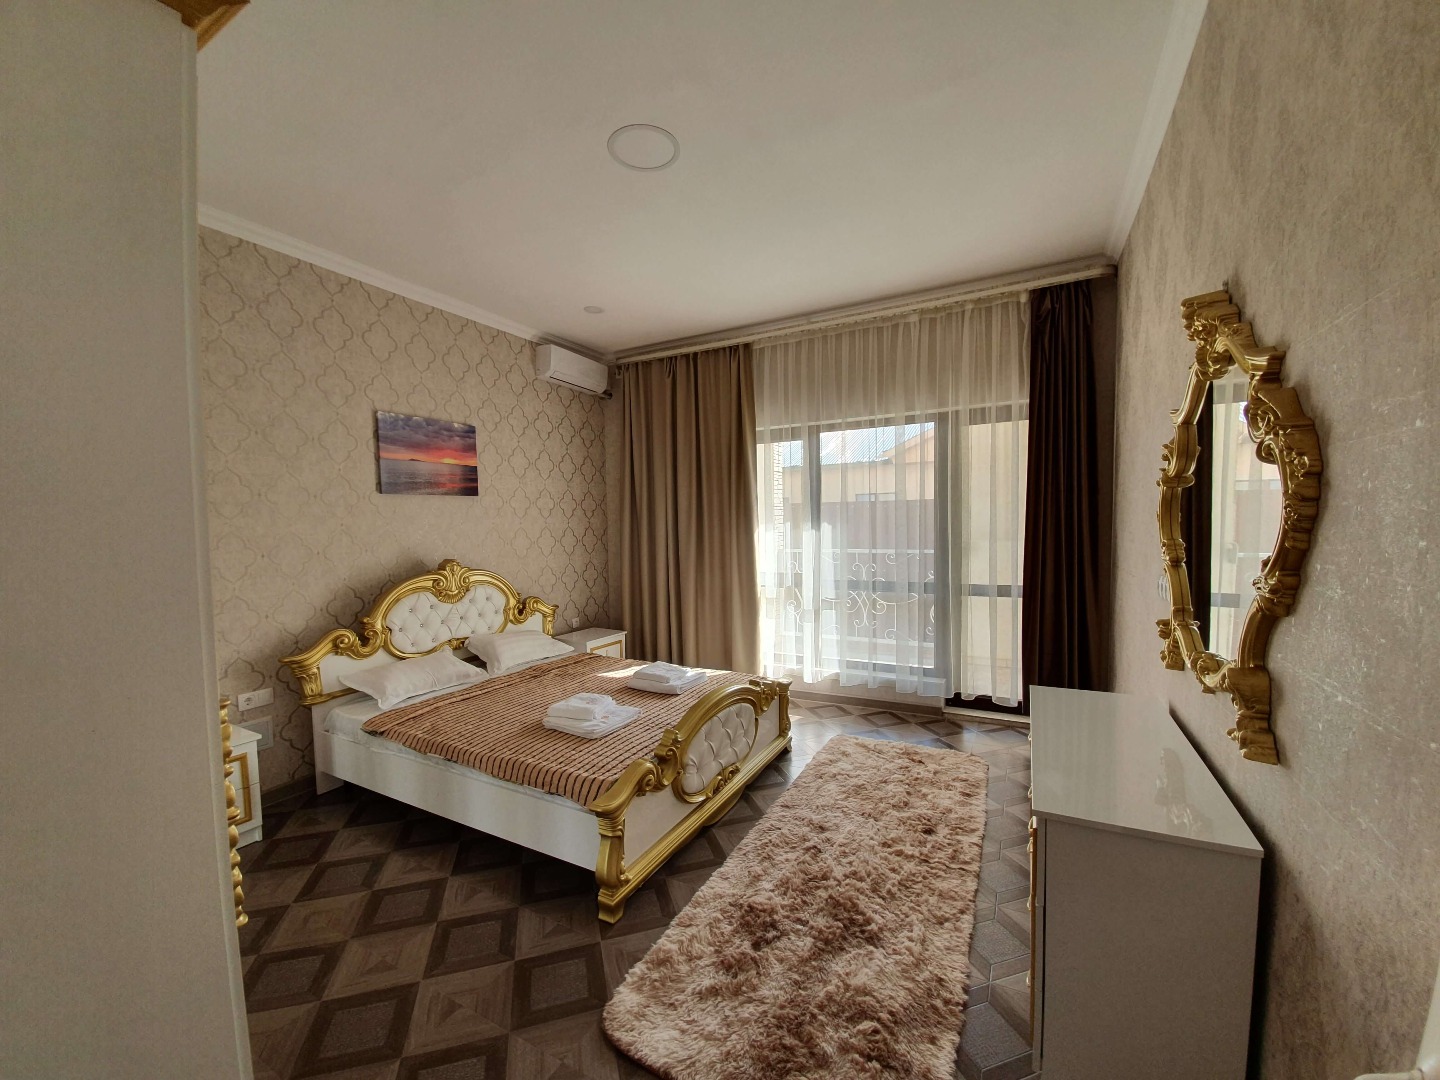 Suite 2-x комнатный - Limpopo Travel в Казахстане